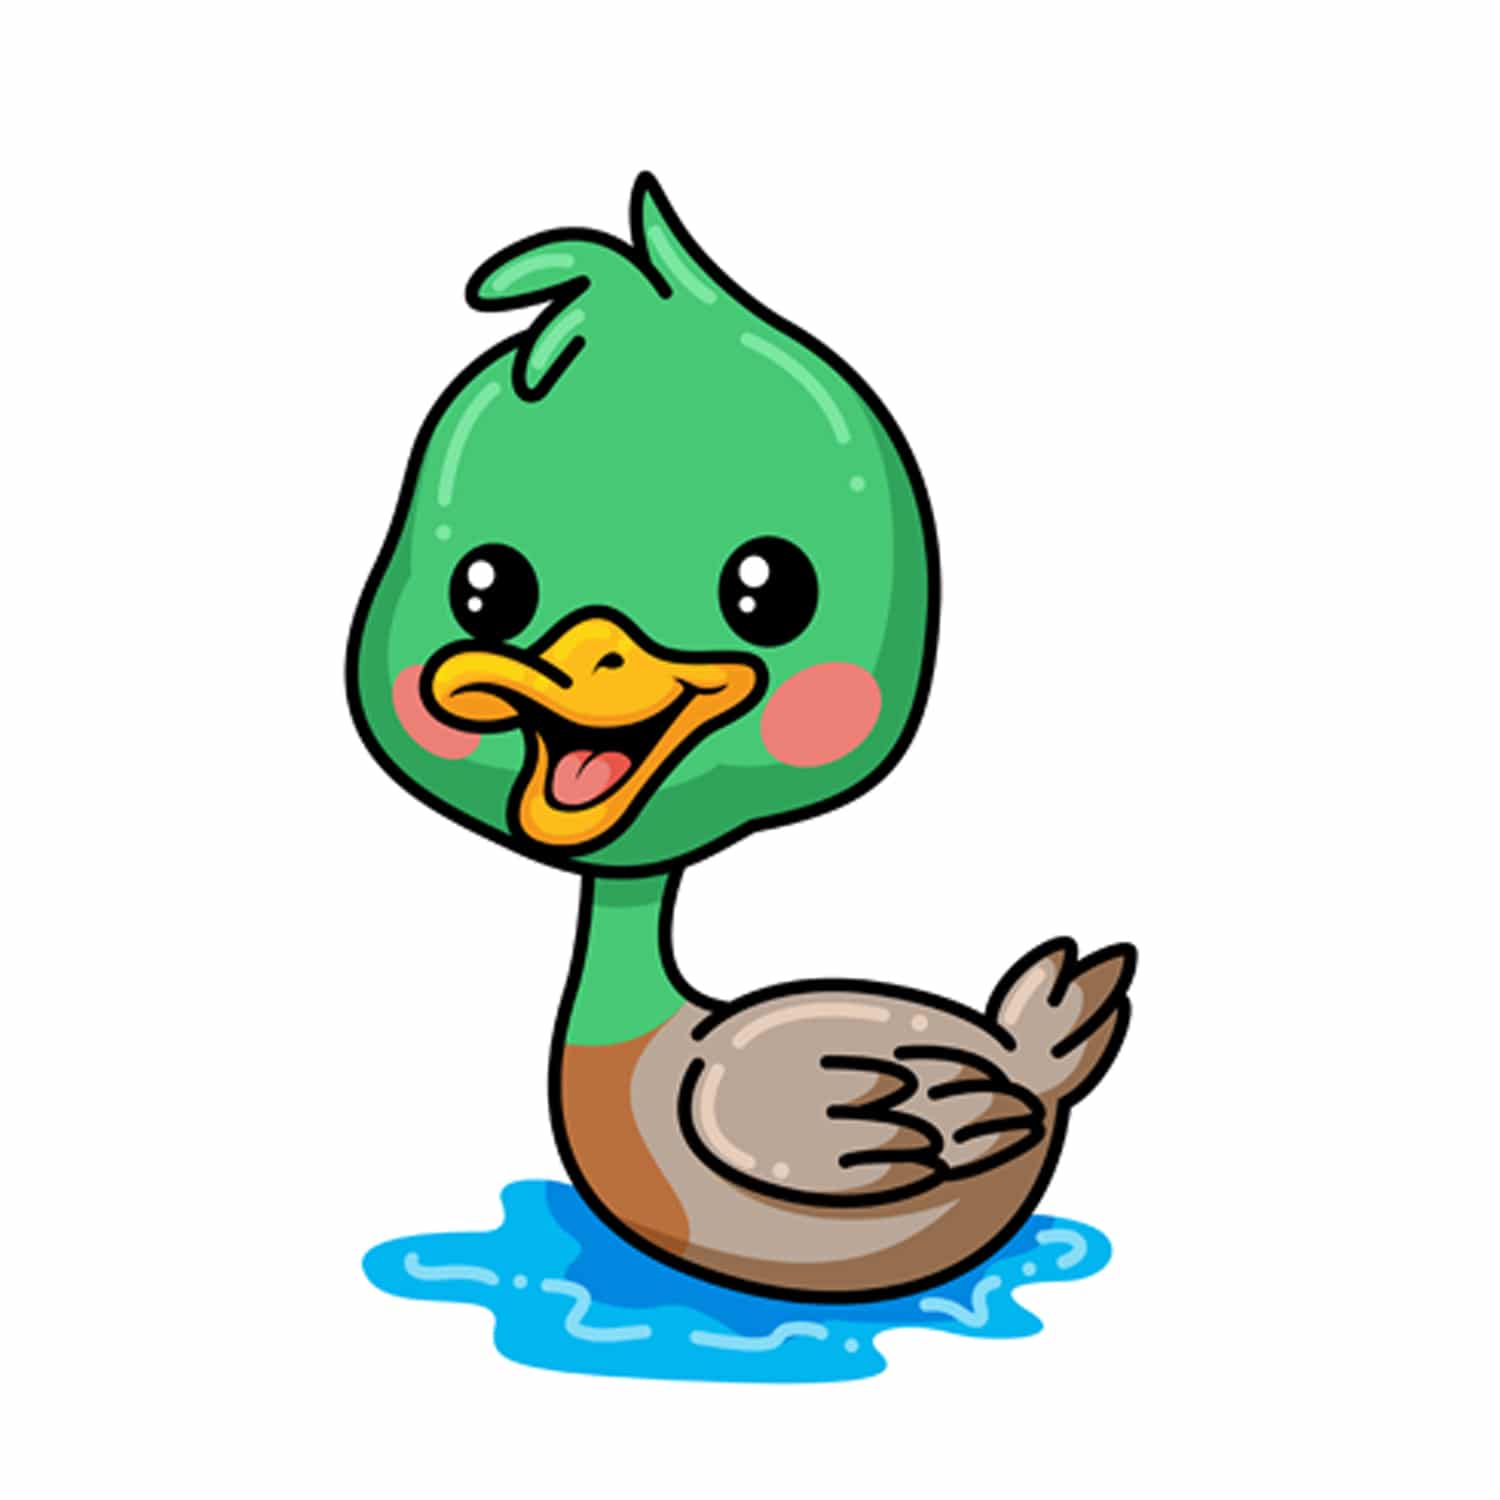 Cute little duck